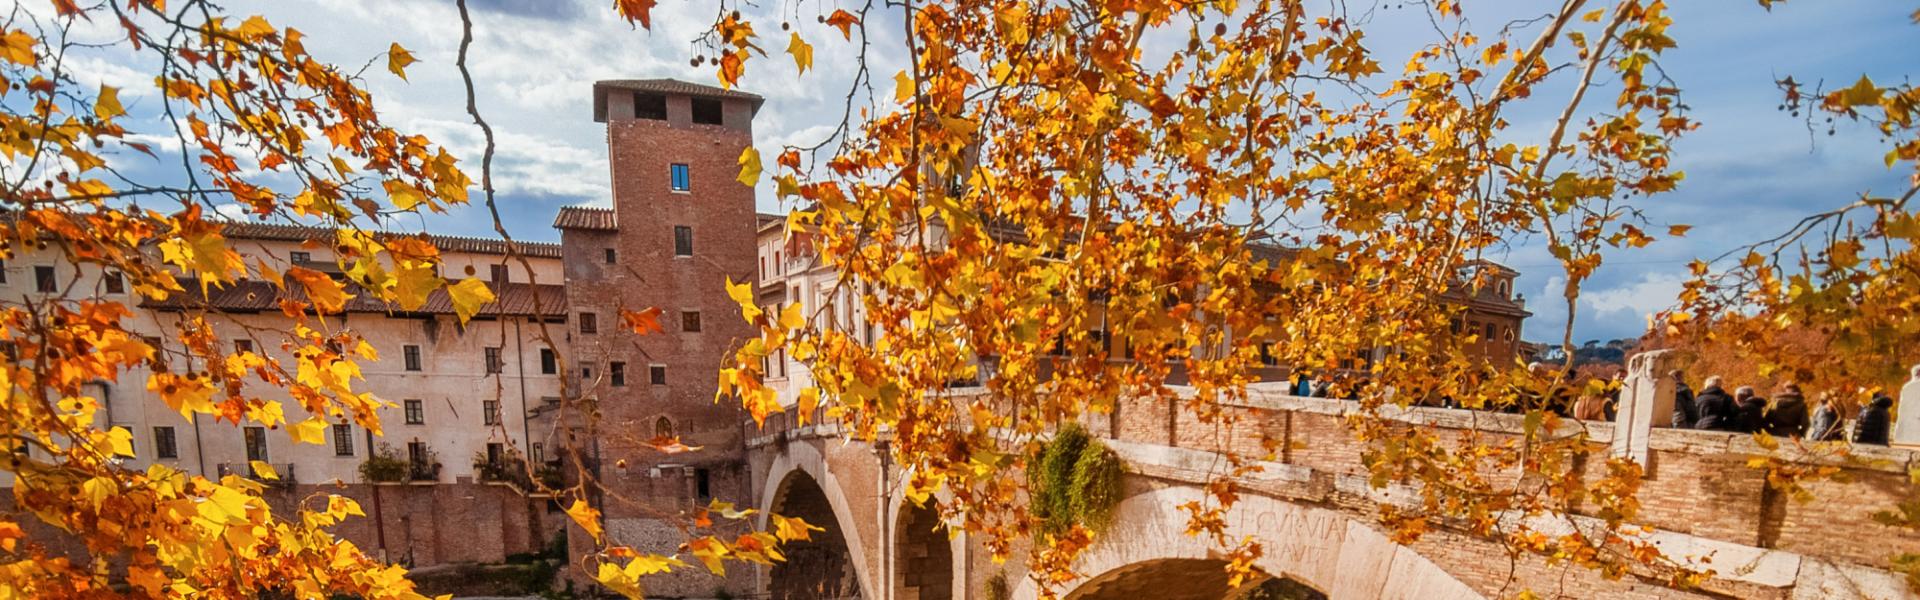 L'autunno in Toscana, un territorio perfetto per outdoor!  